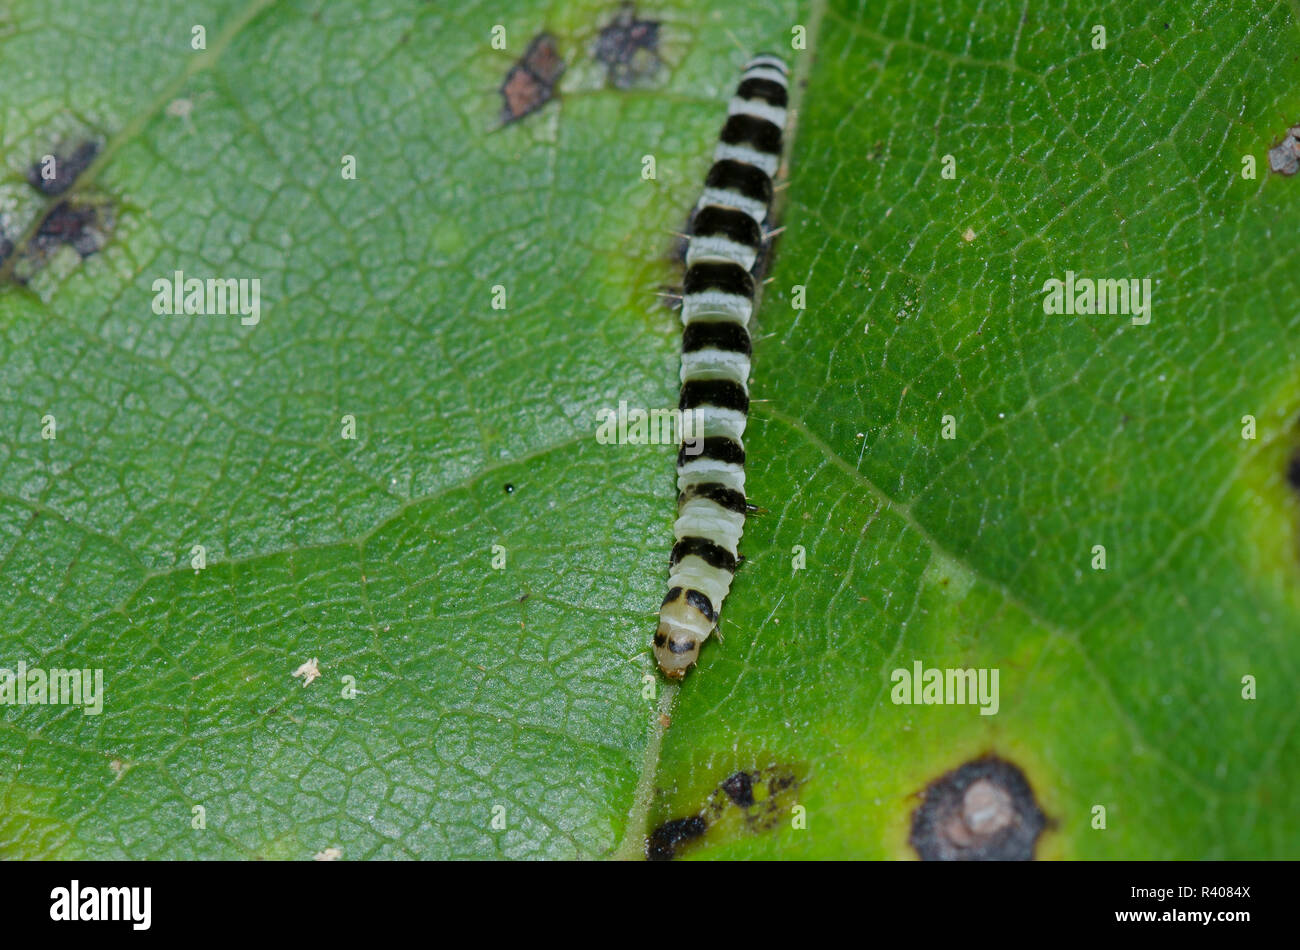 Redbud Leaffolder, Fascista cercerisella, larva on Eastern Redbud, Cercis canadensis Stock Photo